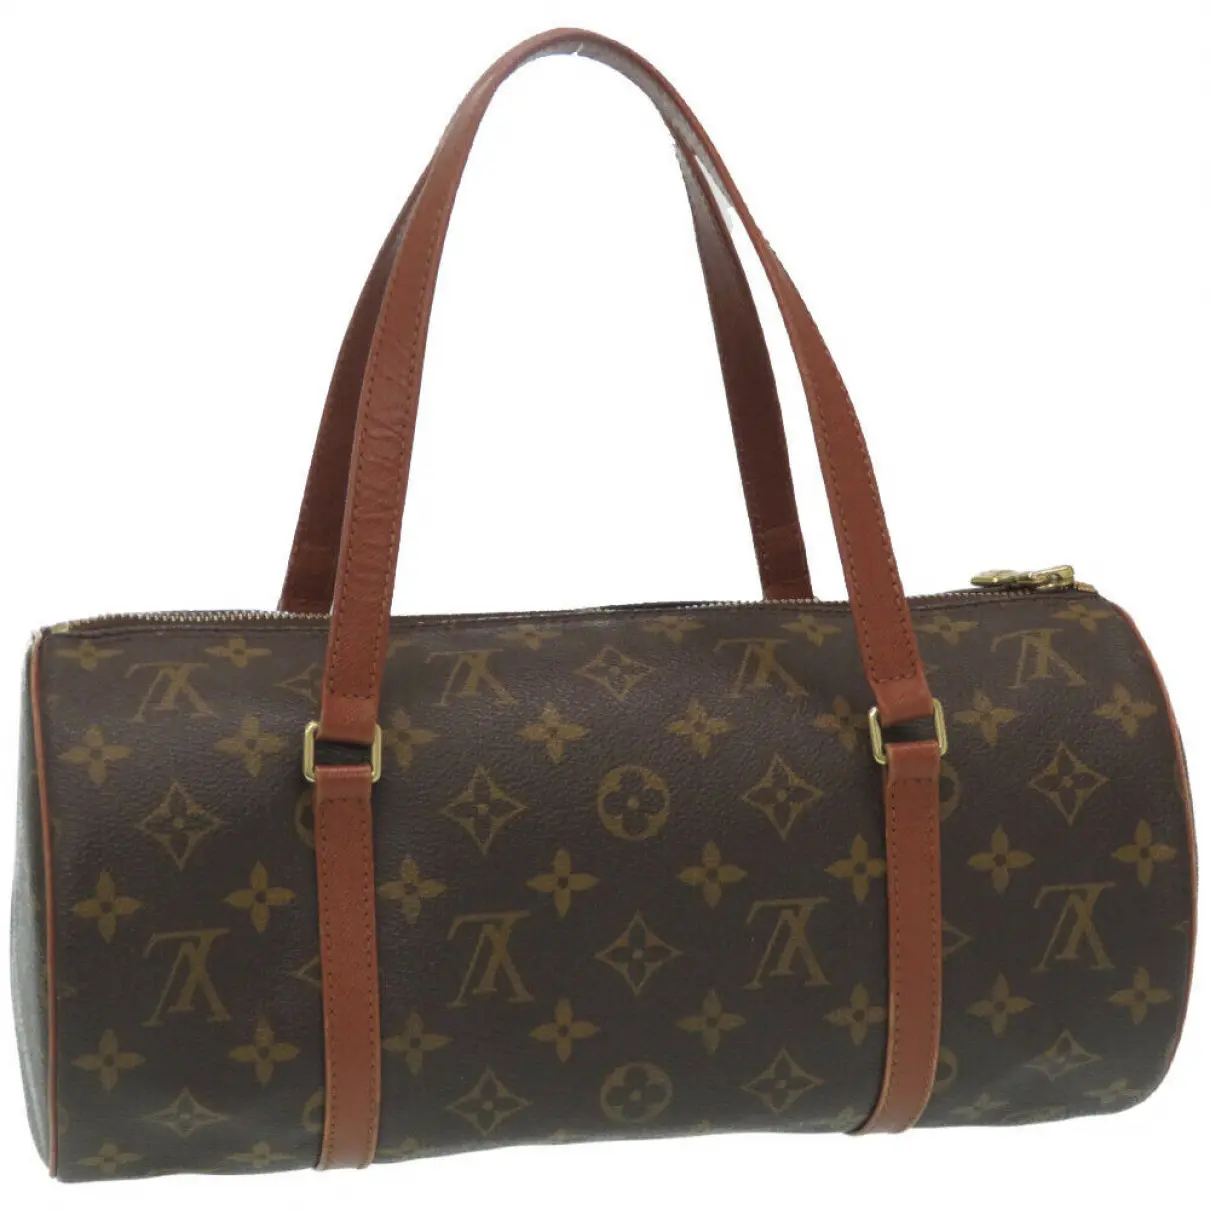 Buy Louis Vuitton Papillon cloth handbag online